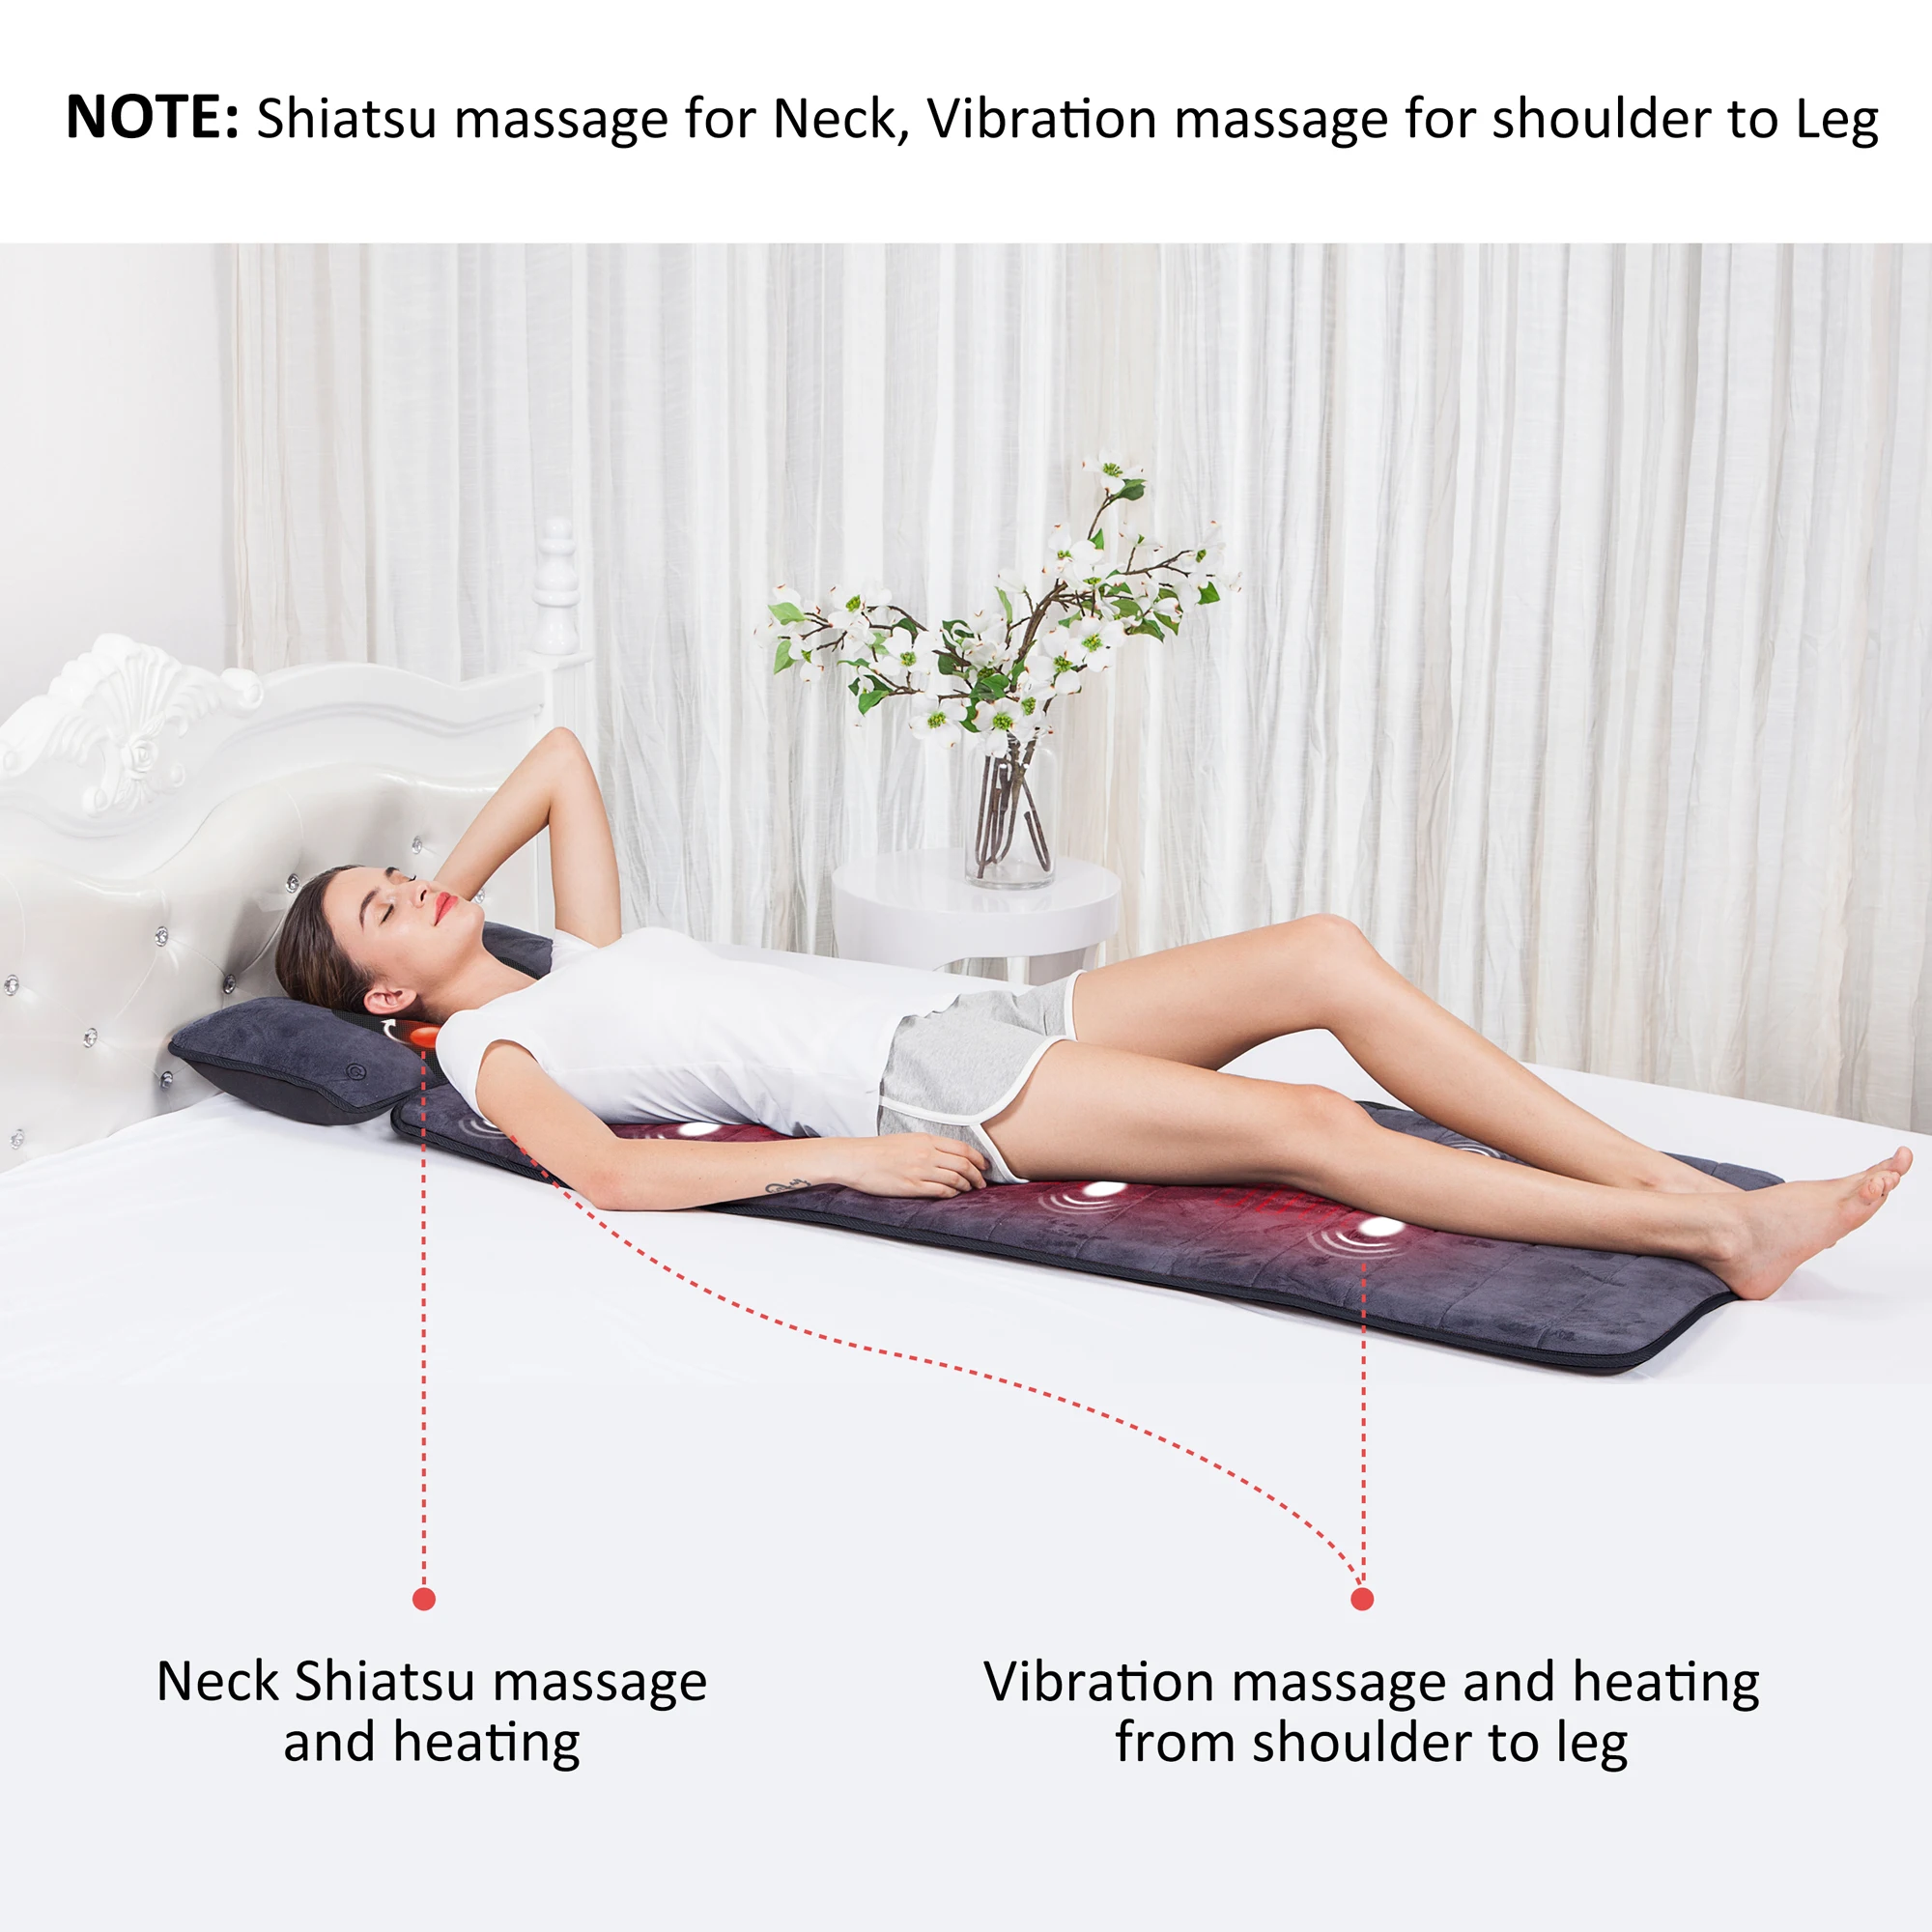 https://ae01.alicdn.com/kf/U063a0c5f0fab444fa3fc3172989da29c4/Comfier-Full-Body-Massage-Mat-with-Movable-Shiatsu-Neck-Massage-Pillow-10-Vibrating-Motors-4-Heating.jpg